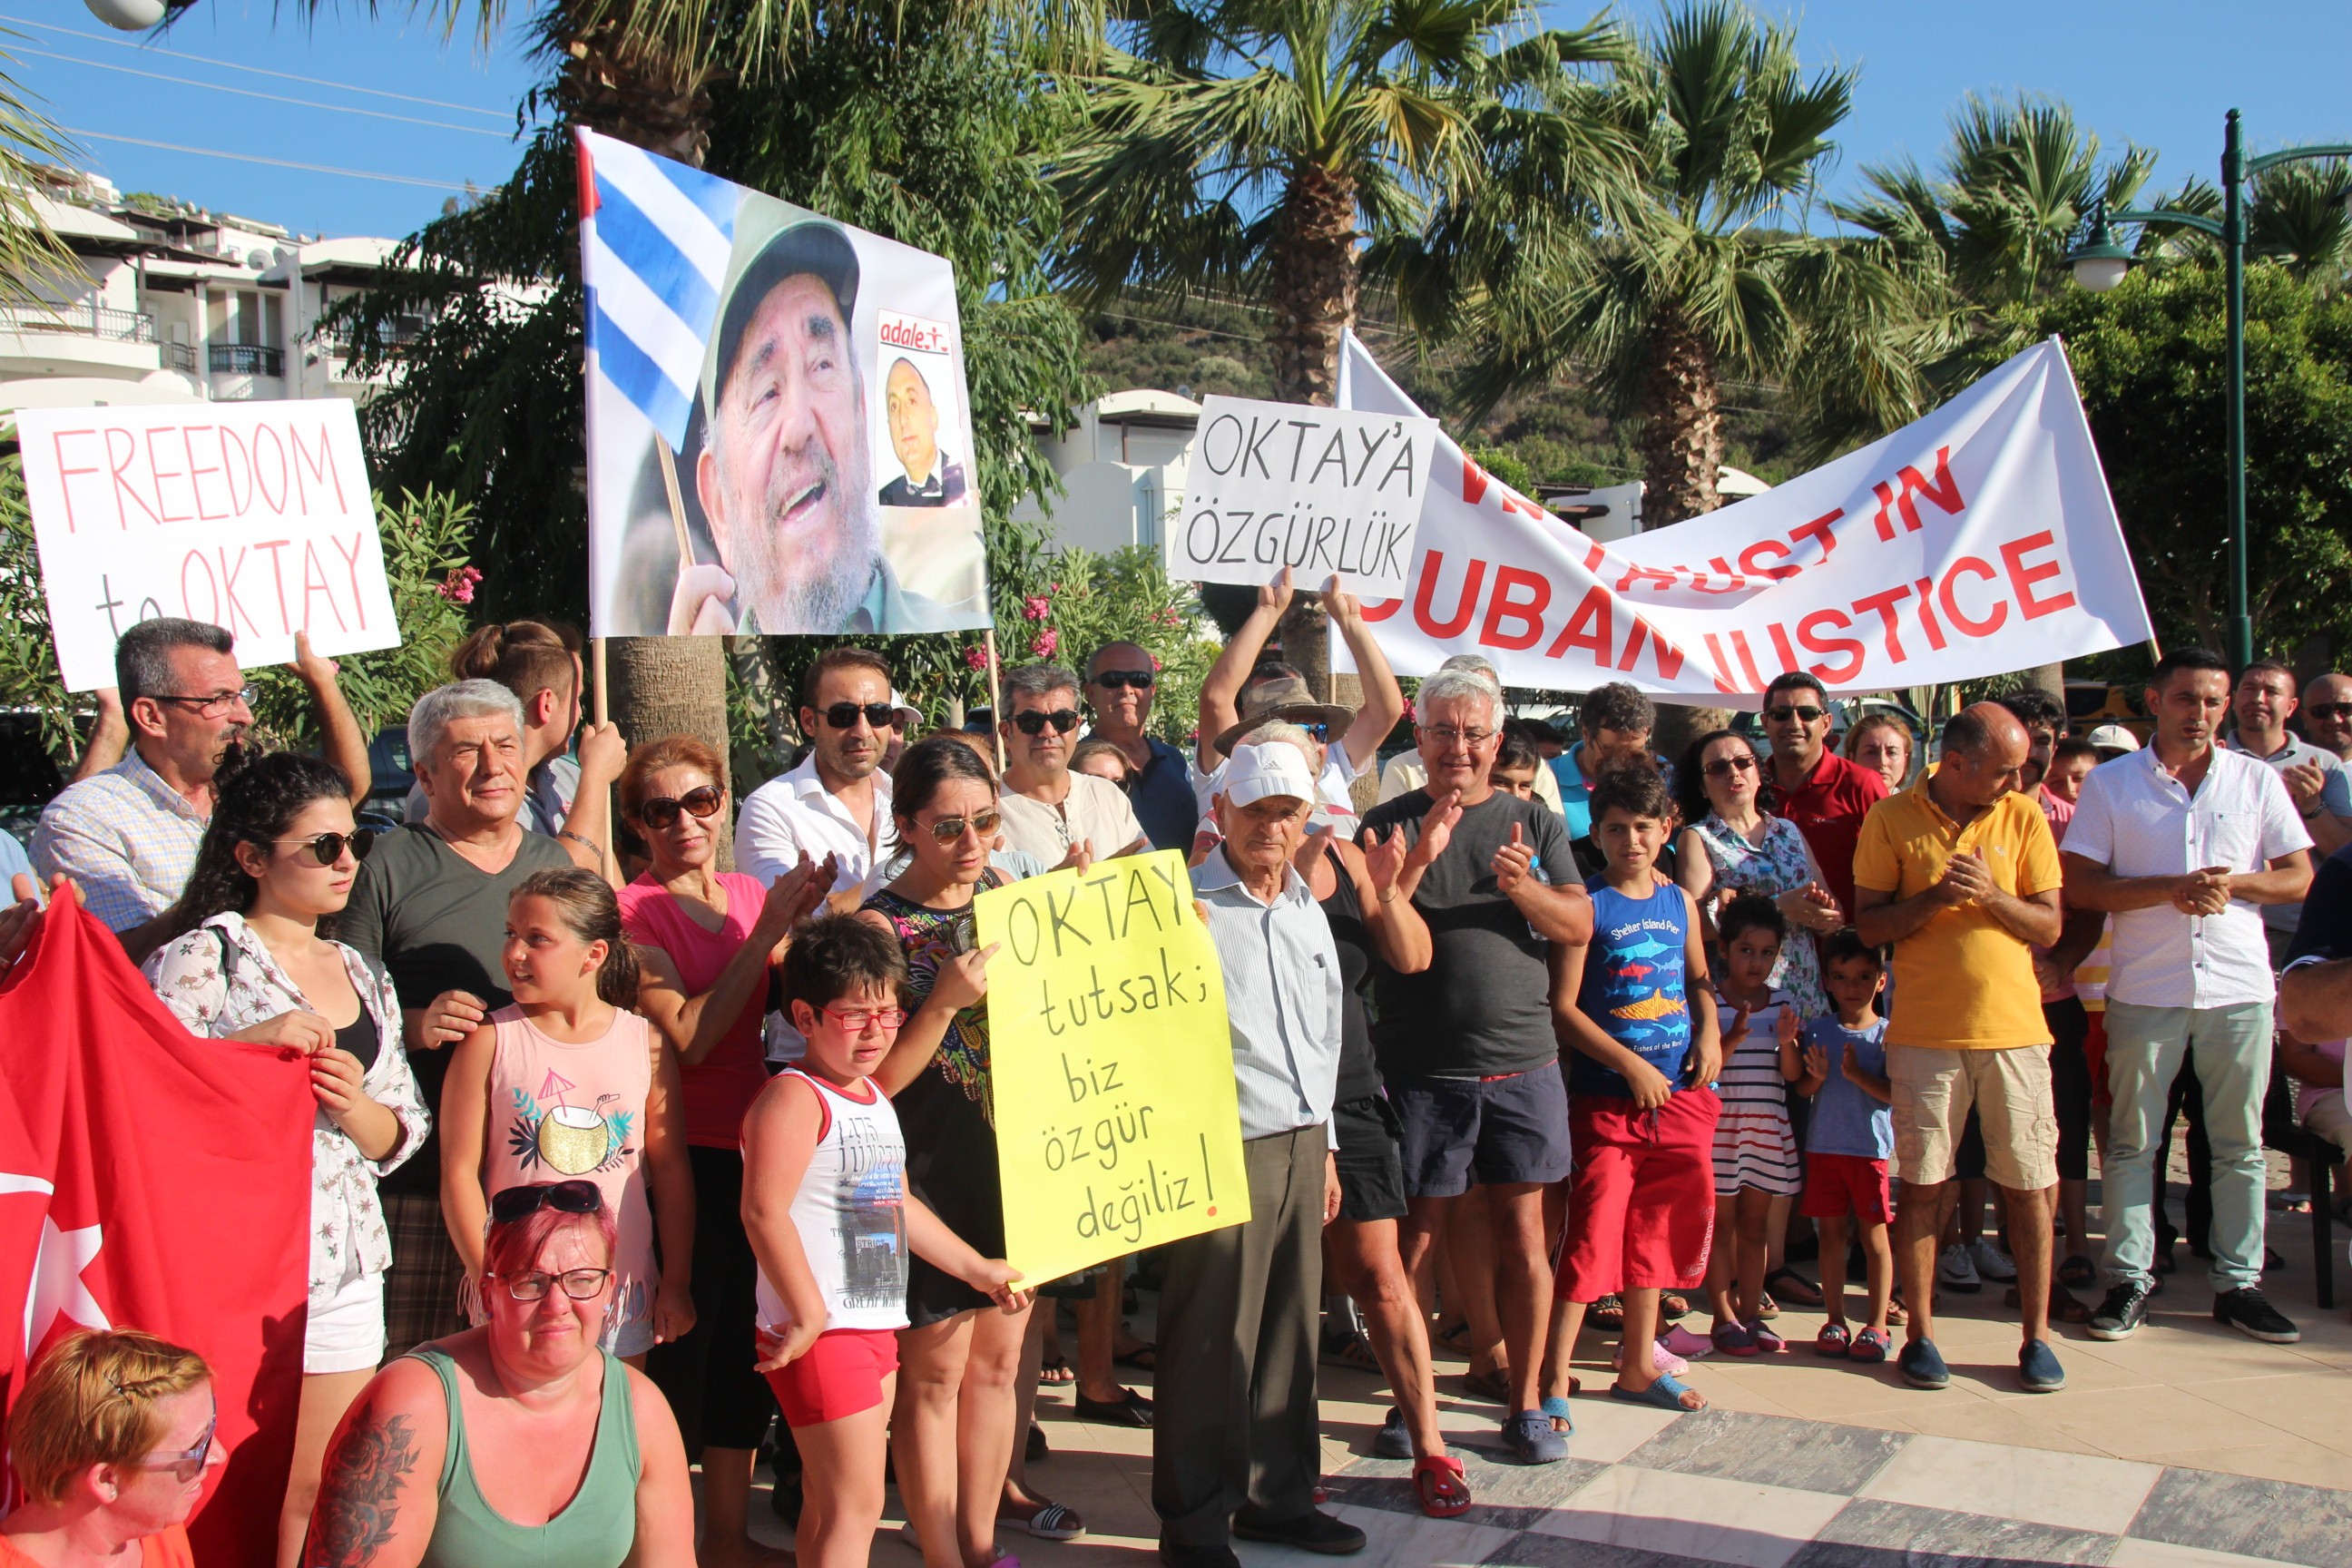 Küba aşığı turizmci Küba'da gözaltına alındı haberi